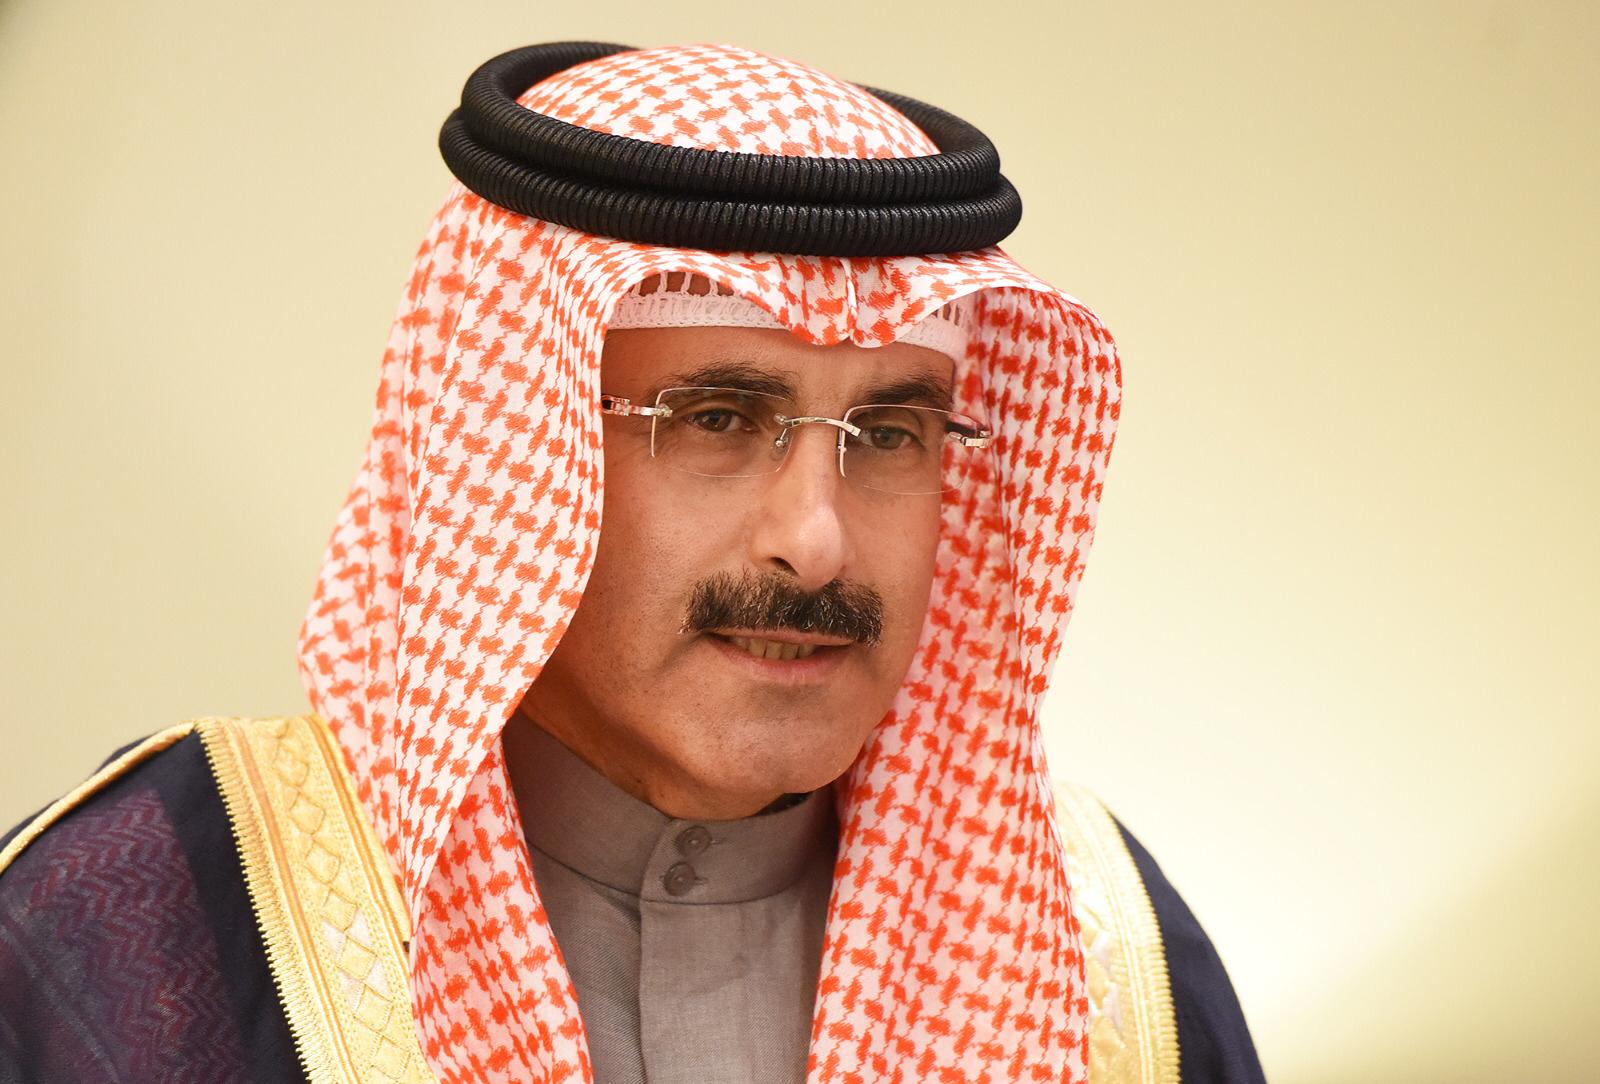 FANA Chairman Sheikh Mubarak Duaij Al-Ibrahim Al-Sabah